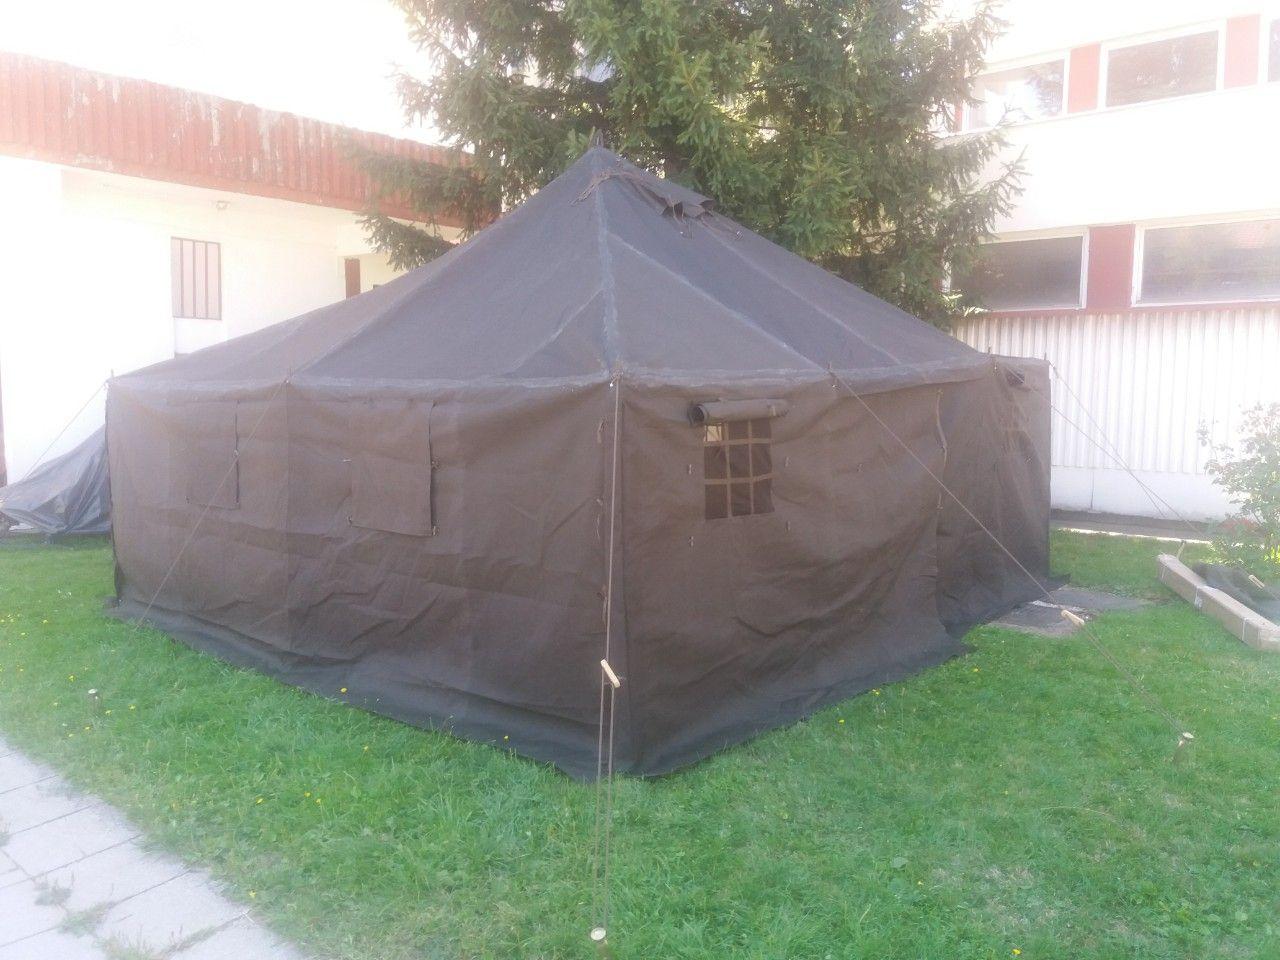 Nabavku šatora finansirala Civilna zaštita - Avaz